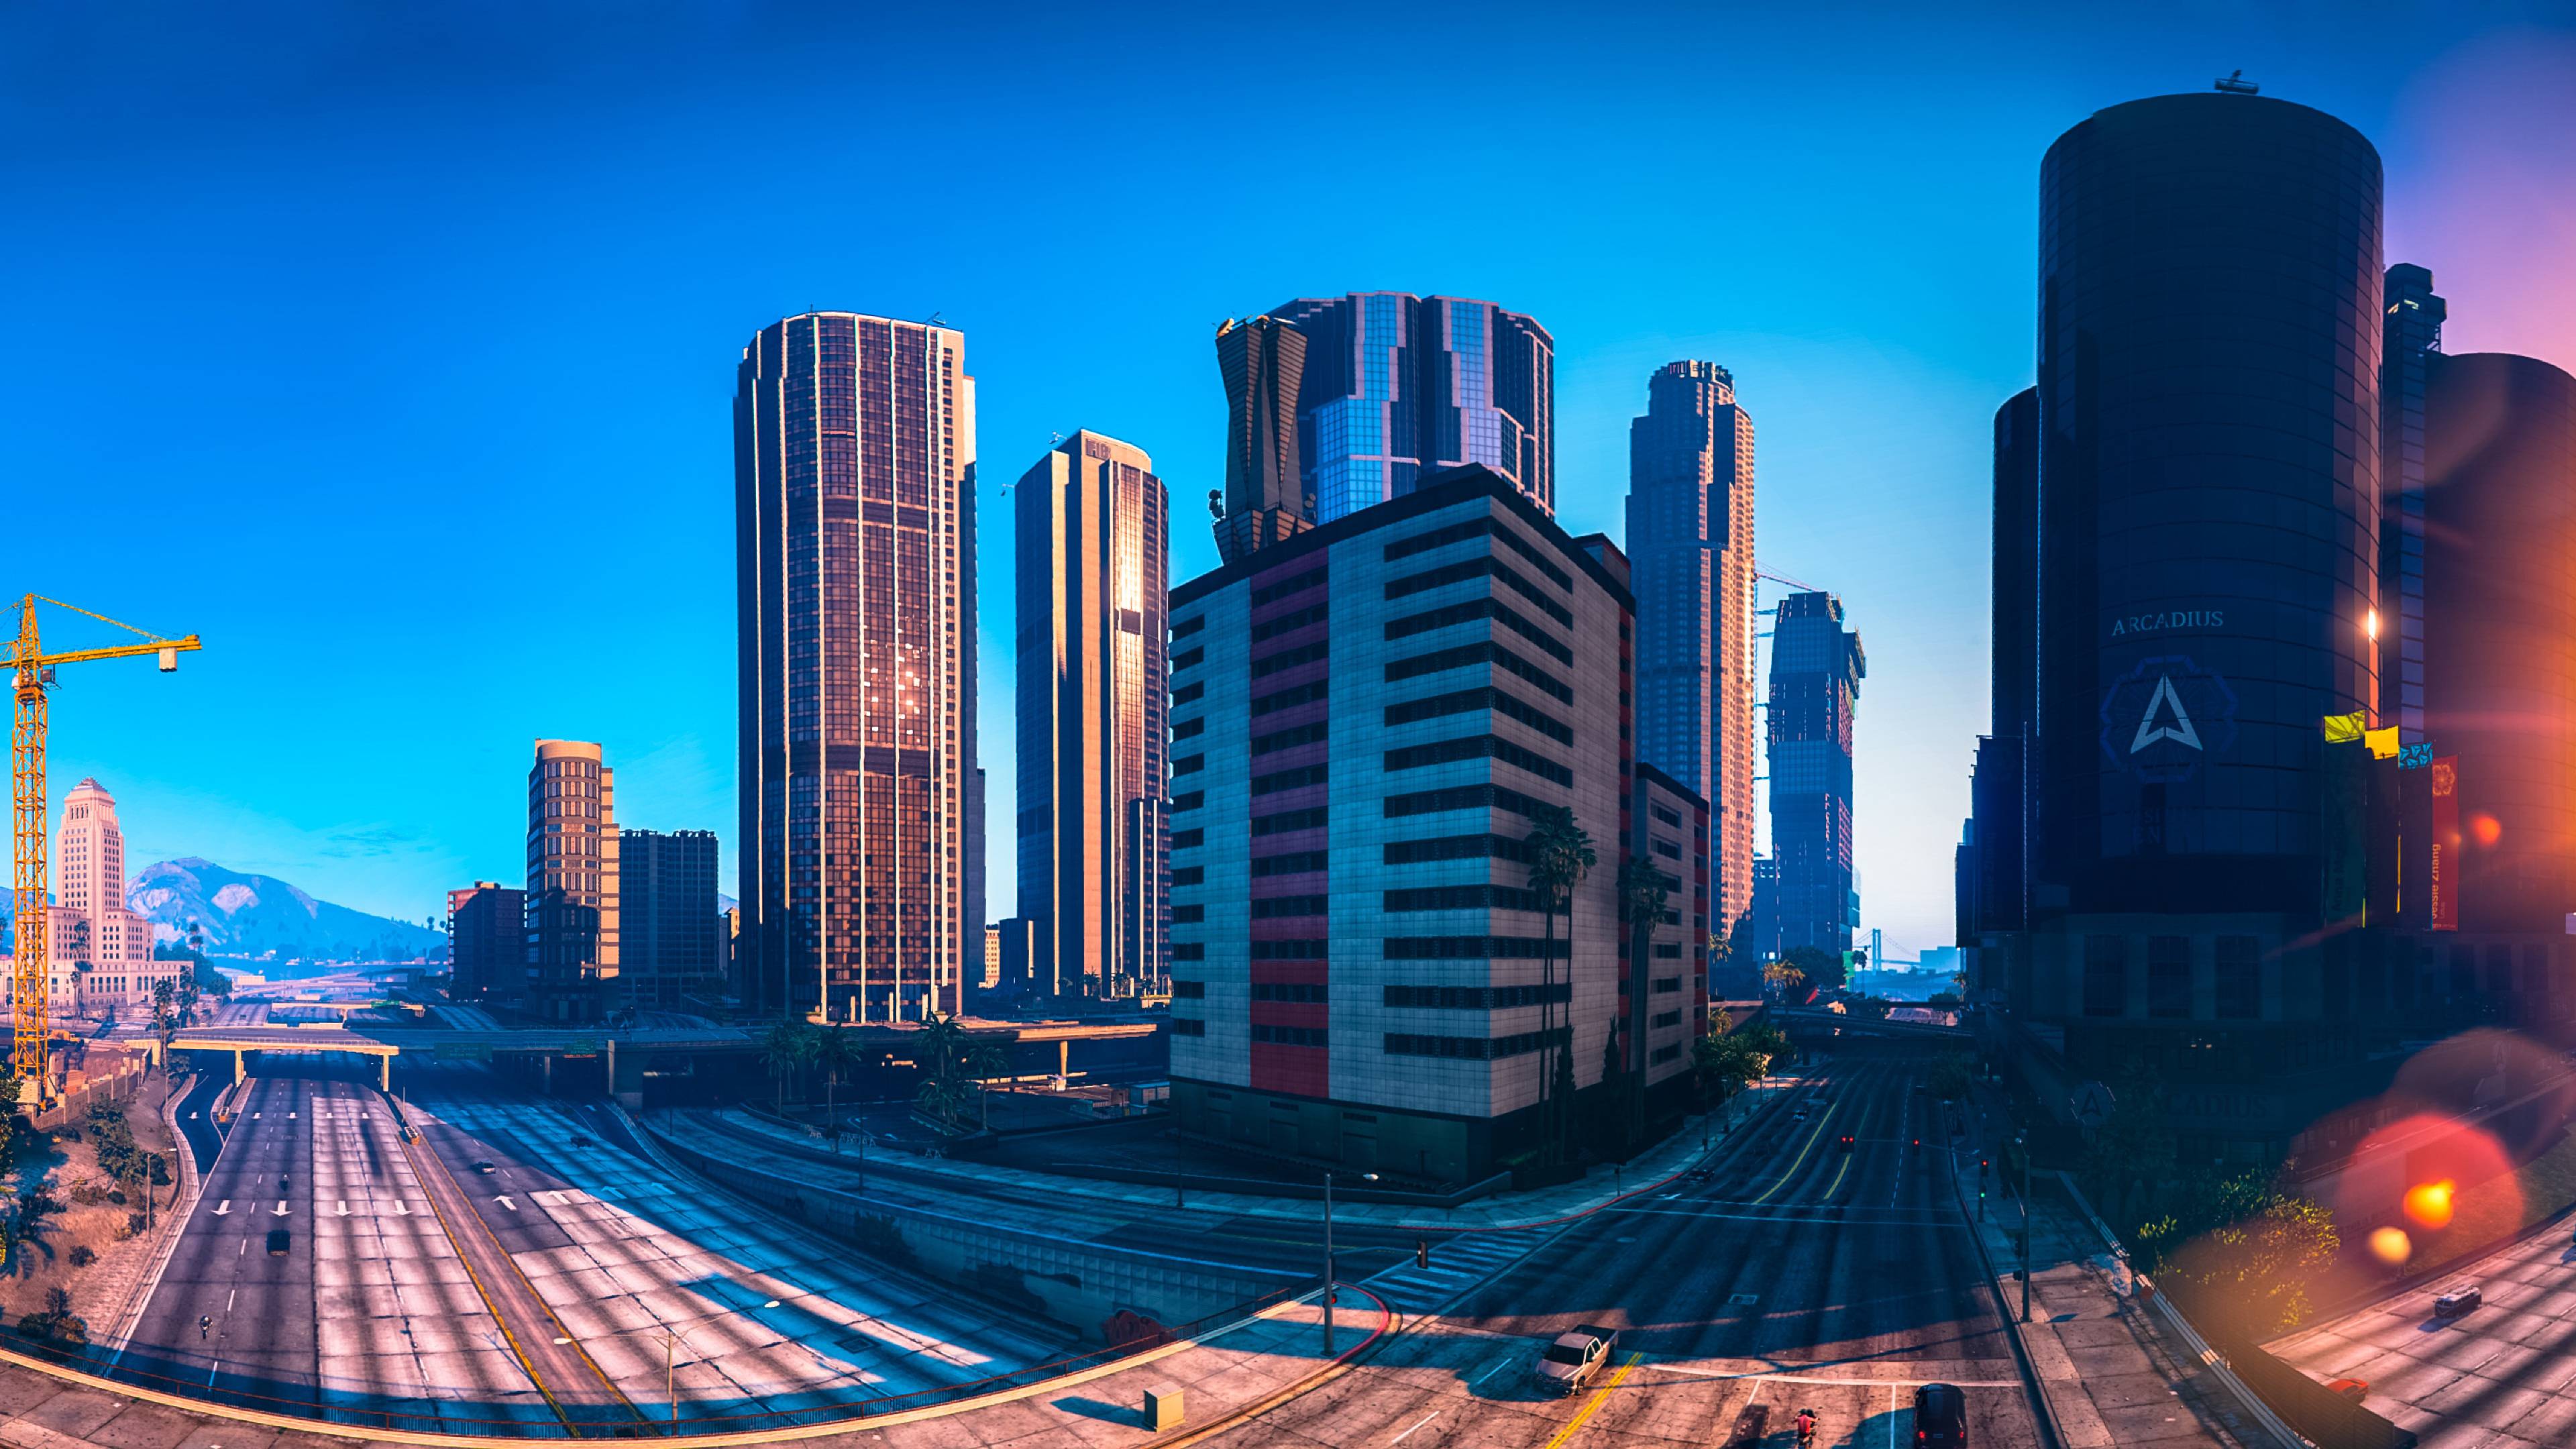 Nếu bạn yêu thích GTA 5, bạn sẽ không muốn bỏ lỡ bộ sưu tập hình nền GTA 5 City đẹp như mơ này. Nơi đây sẽ đưa bạn đến thành phố Los Santos với những cảnh quan tuyệt đẹp và phong cách đầy cá tính. Hãy xem qua bộ sưu tập này để thực sự cảm nhận một thành phố không bao giờ ngủ.